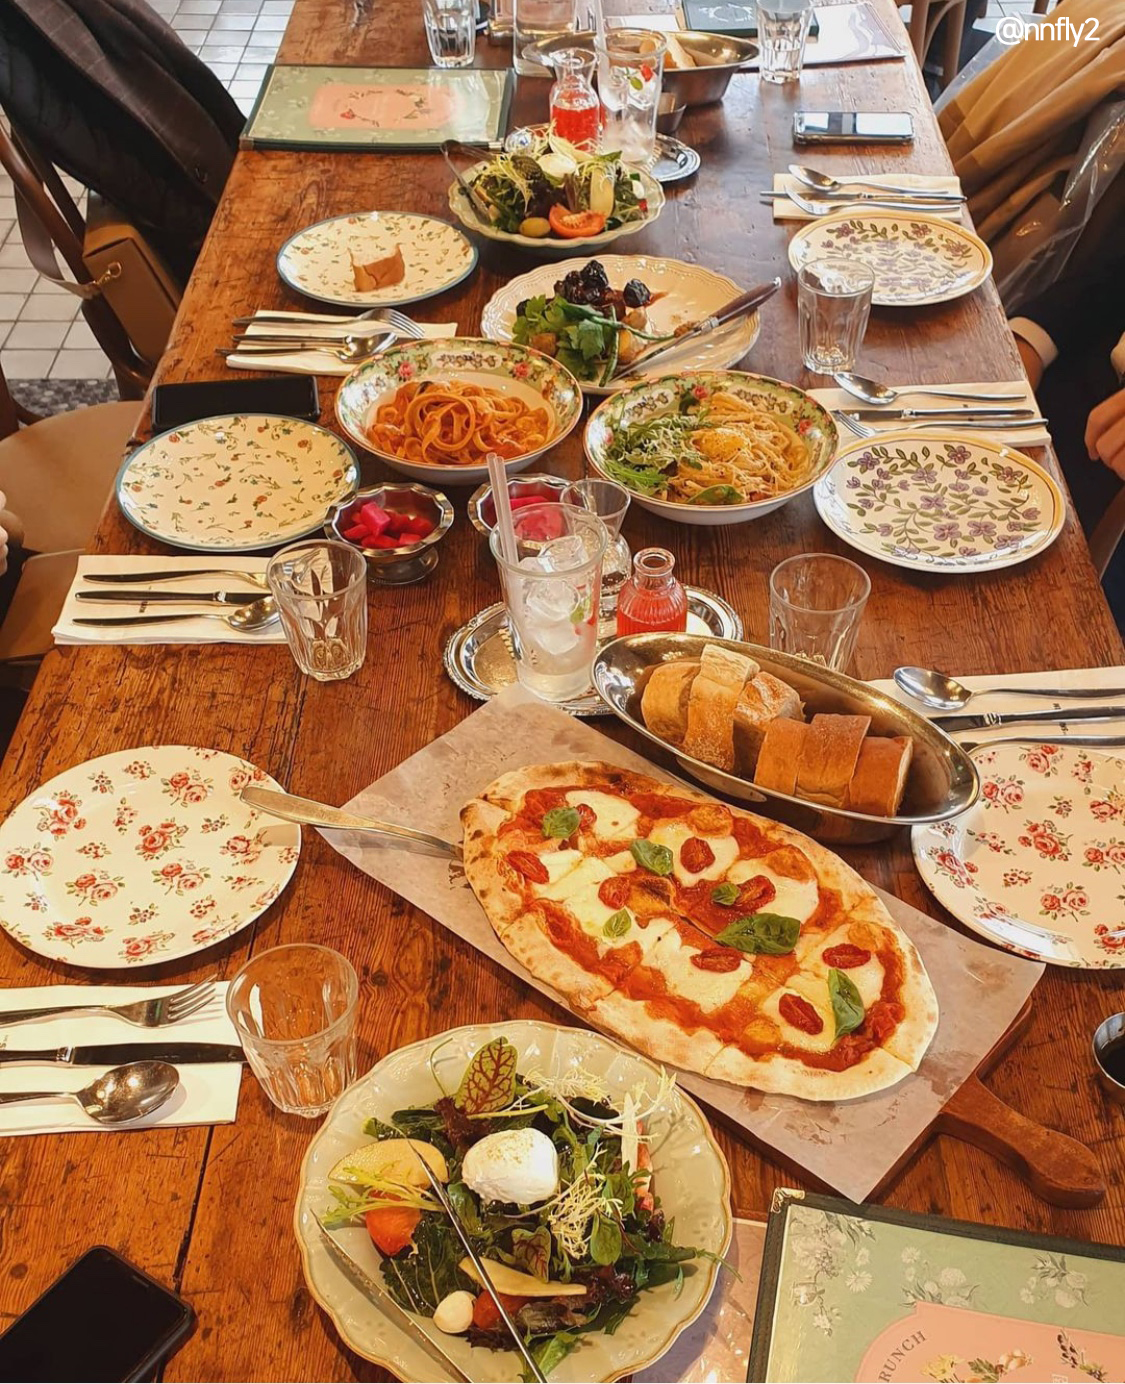 파티를 연상케하는 테이블위에 여러 음식들이 올려져 있는 모습